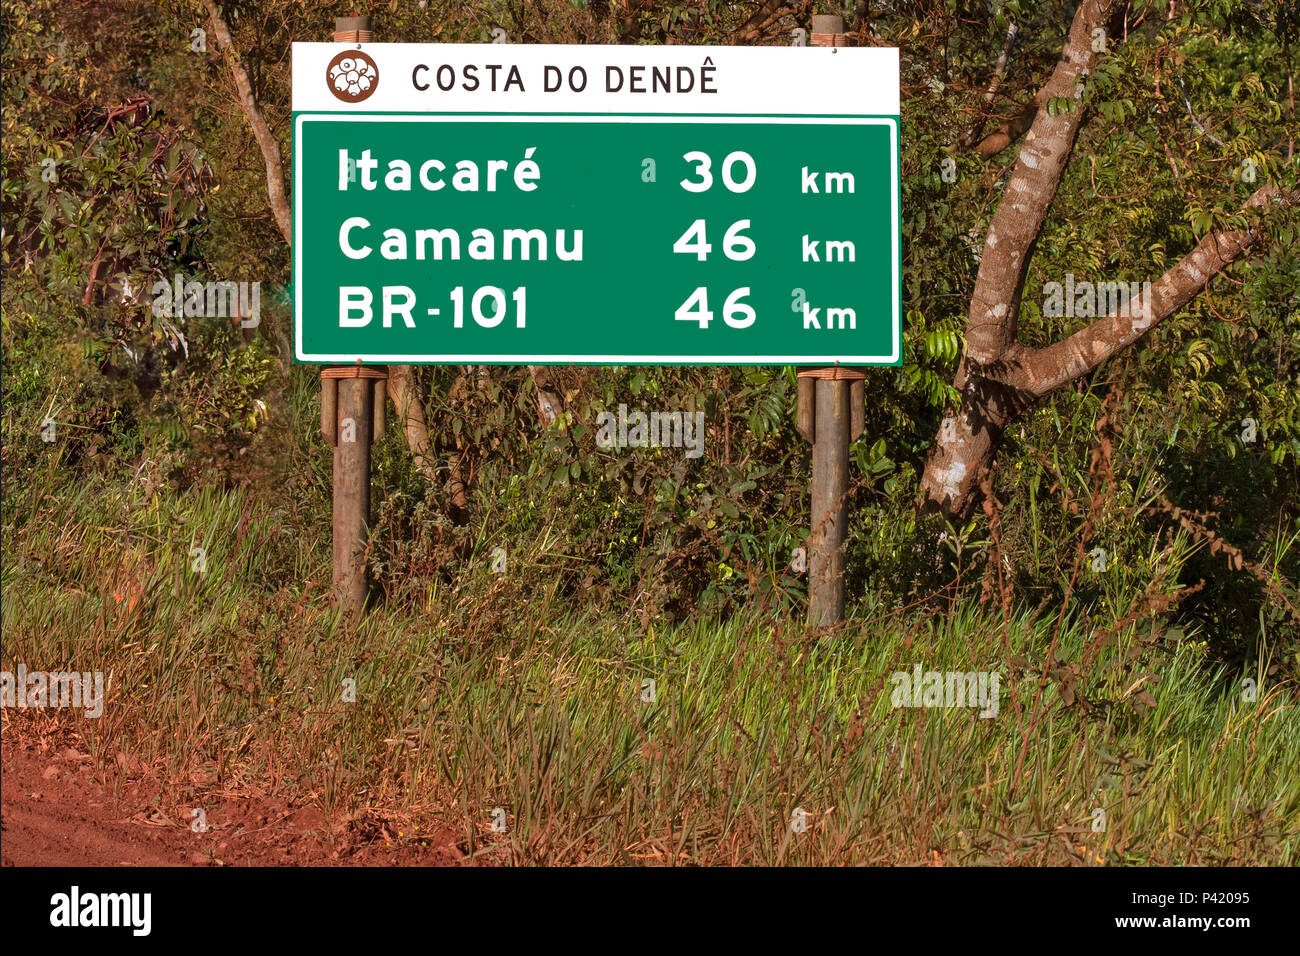 BR 101 - Costa do dendê Bahia  Placa da BR 101 Placa indicando distâncias de Itacaré e Camamu na Bahia Costa do dendê Sul da Bahia Maraú Bahia Brasil Nordeste Stock Photo